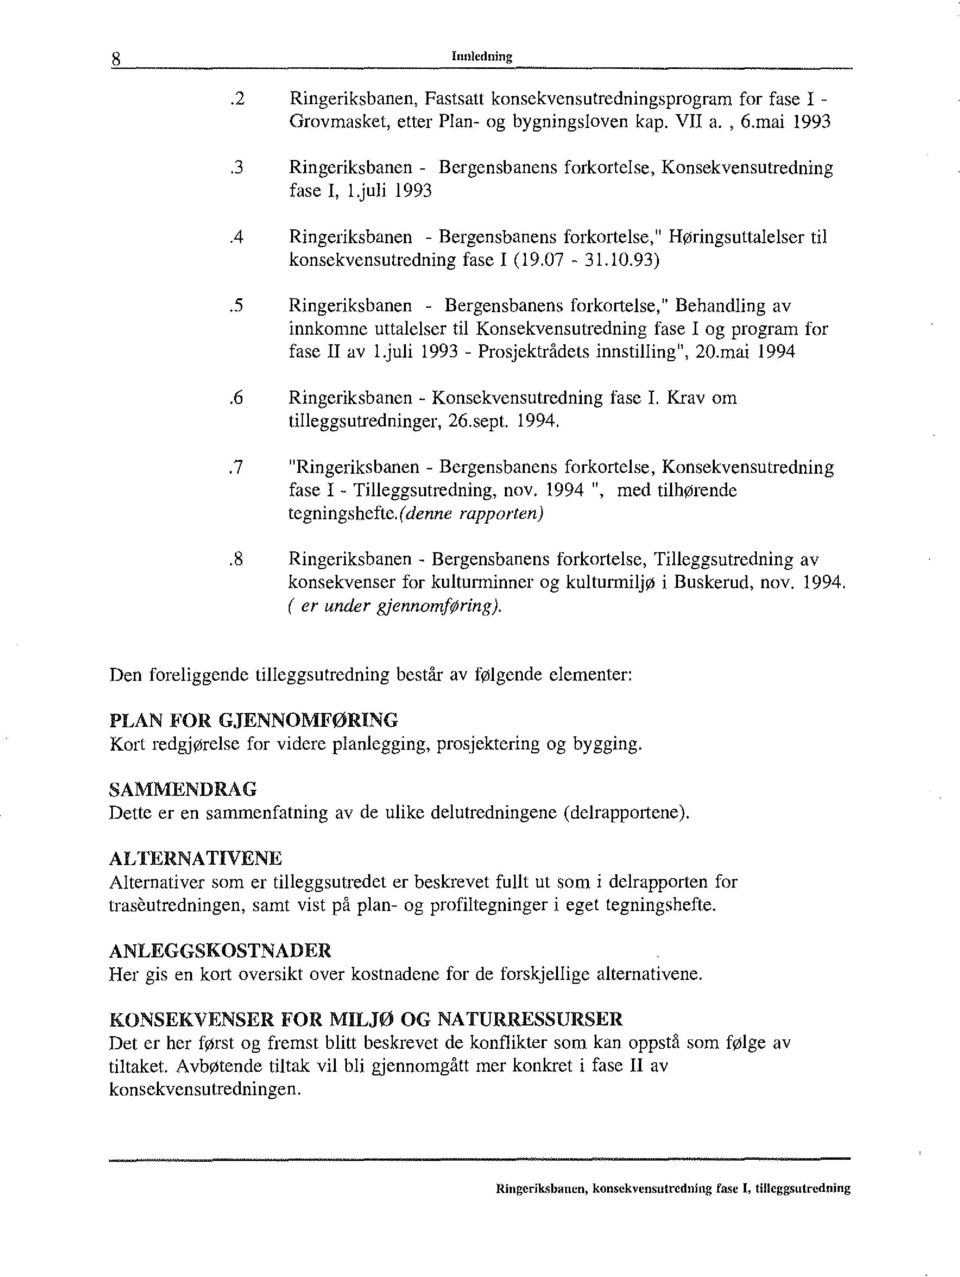 93) Ringeriksbanen - Bergensbanens forkortelse," Behandling av innkomne uttalelser til Konsekvensutredning fase I og program for fase Il av!.juli 1993 - Prosjektrådets innstilling", 20.